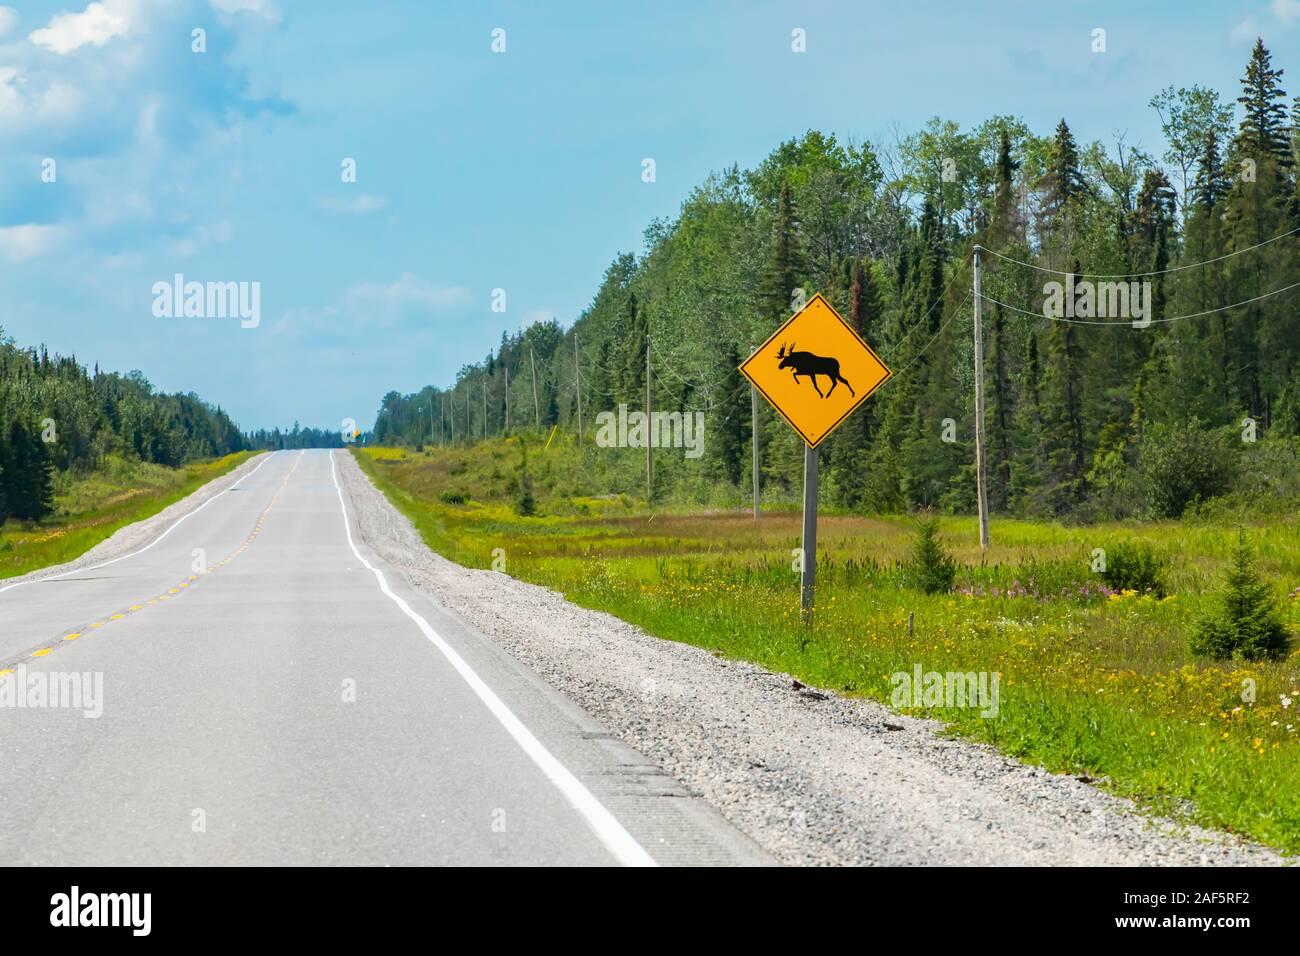 Vue de la route vide, avec un avertissement de moose crossing the road sign avec les tours de transmission et de pins sur le bord de la forêt Banque D'Images